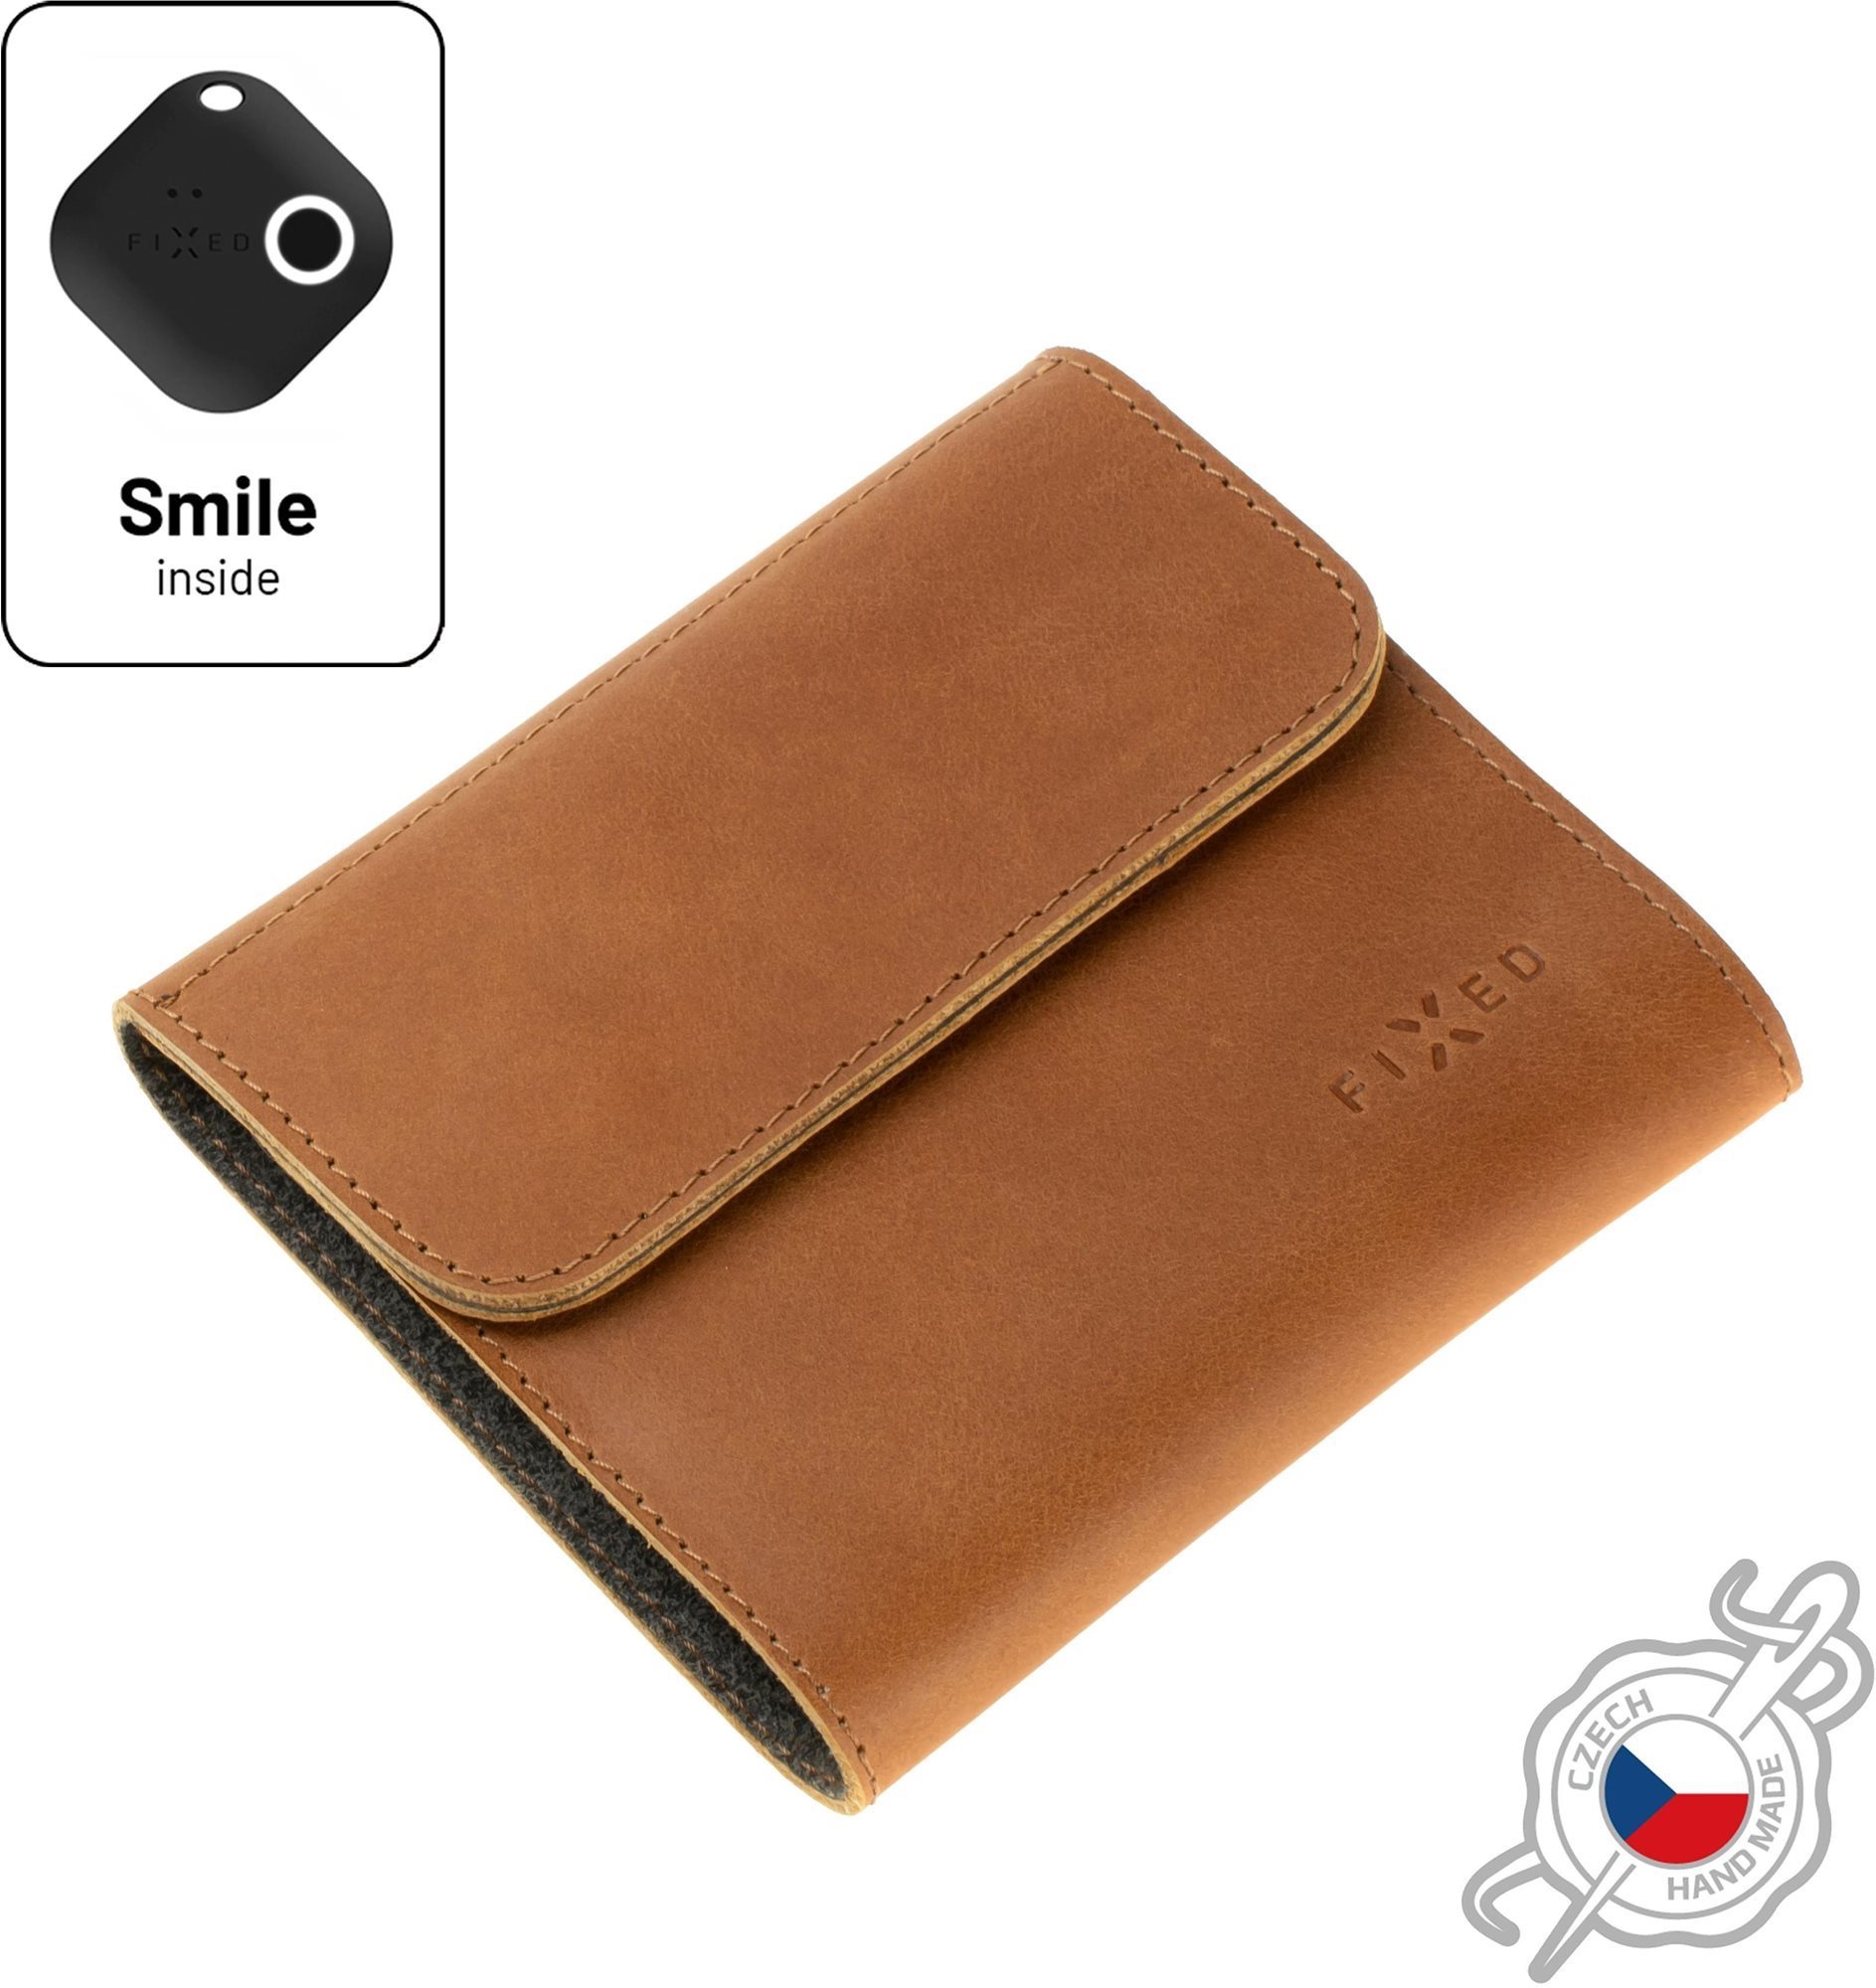 Pénztárca FIXED Smile Classic Wallet FIXED Smile PRO smart trackererel